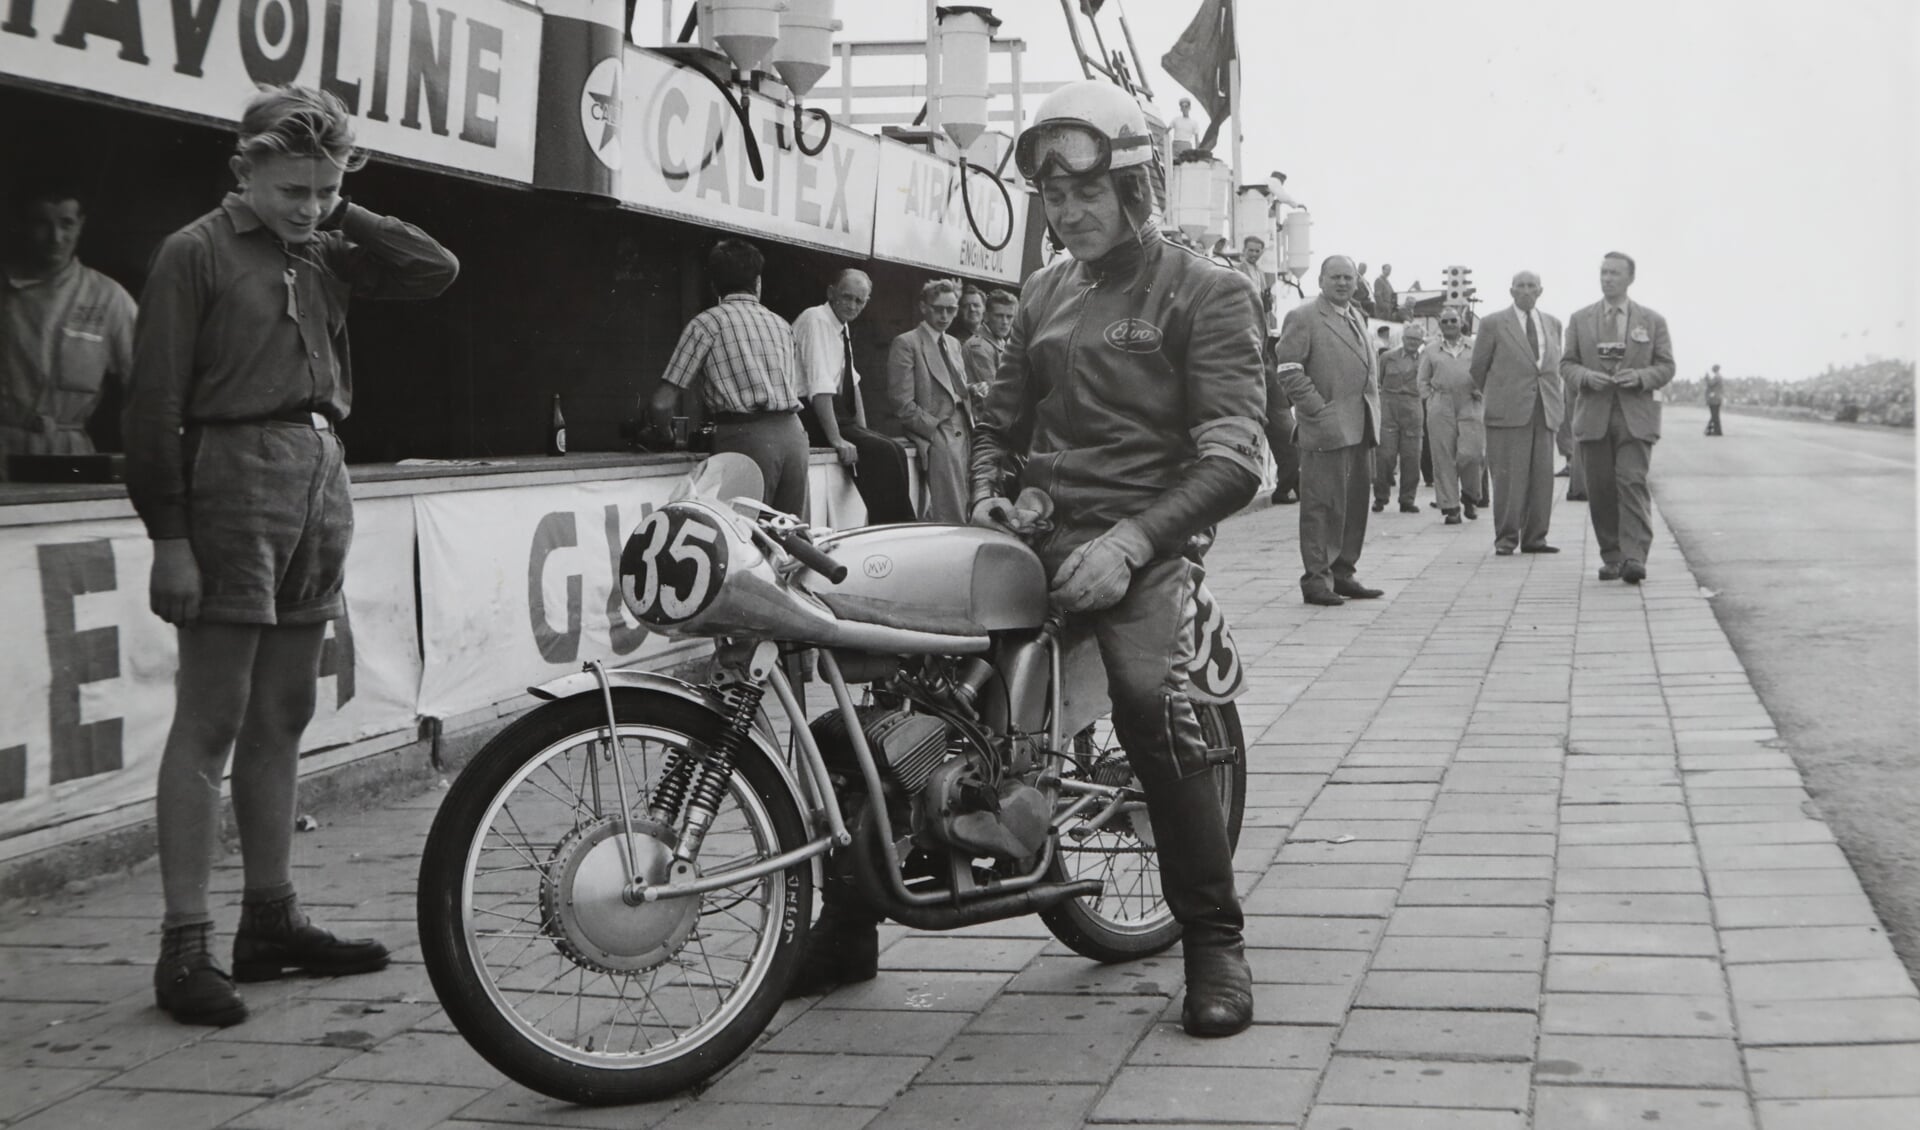 • Jan Muijlwijk op zijn zelfgebouwde motorfiets tijdens de TT races in 1954. Koen is het het jongetje in korte broek.